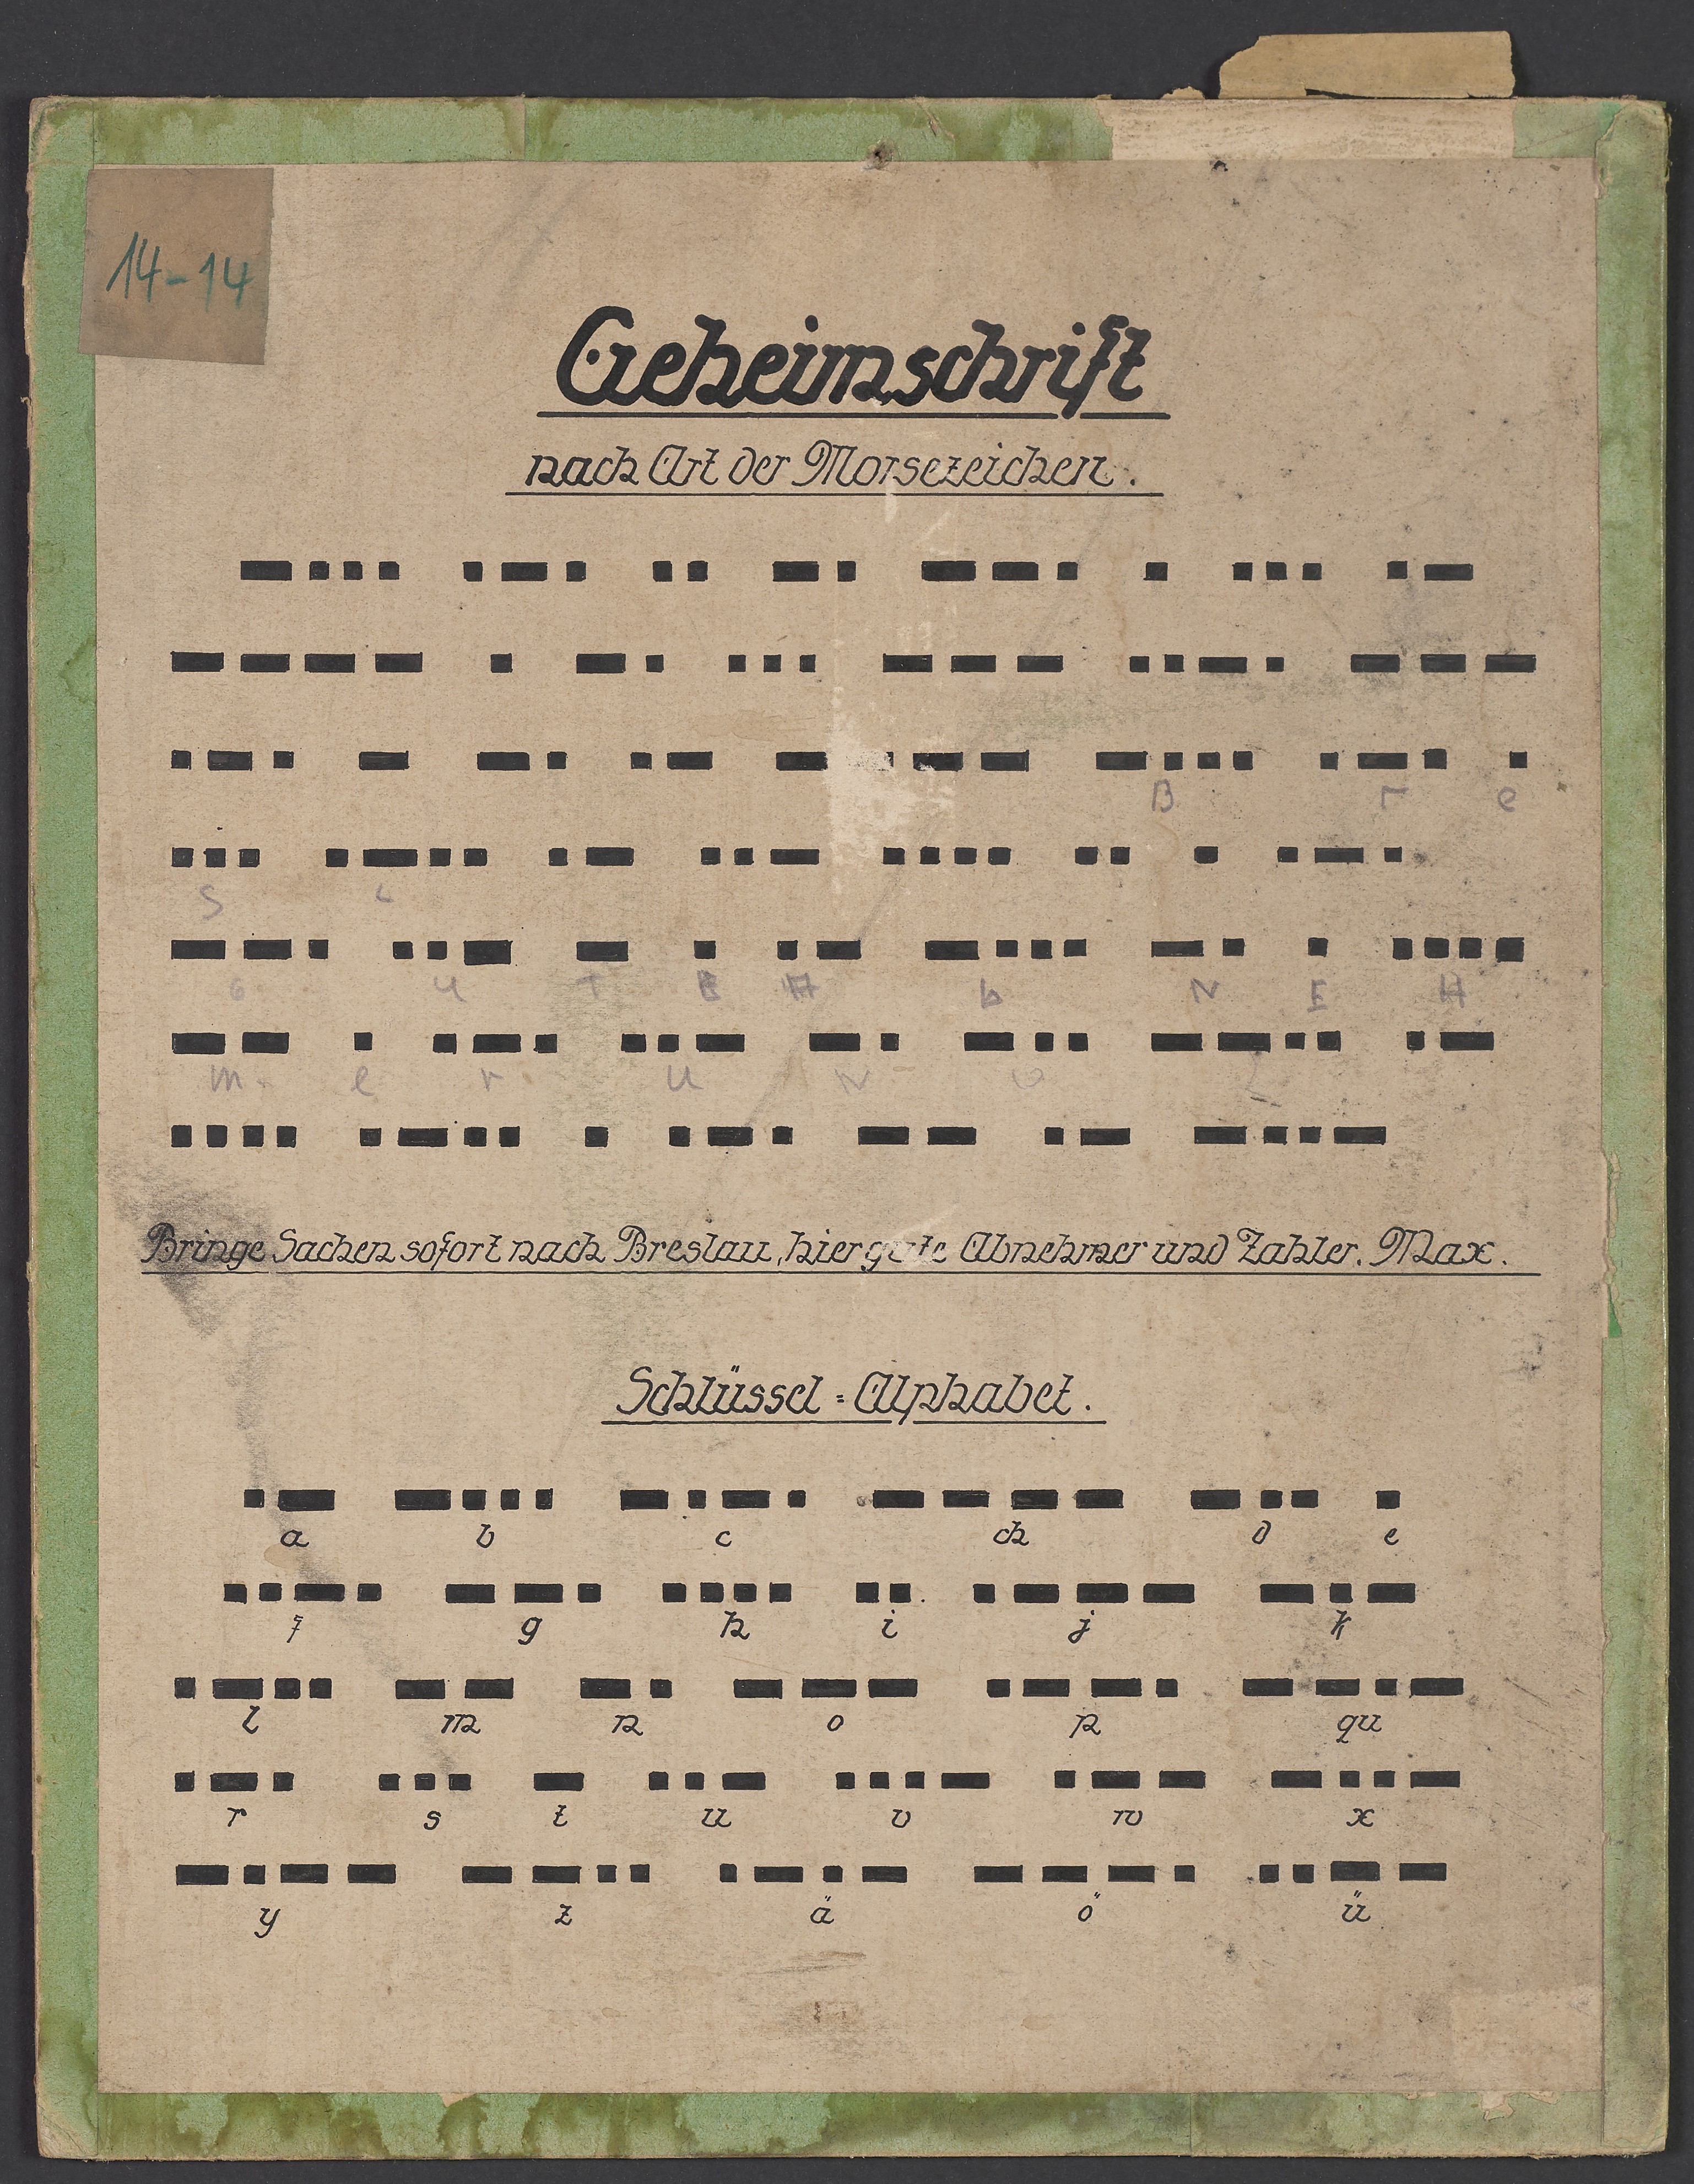 Lehrtafel "Geheimschrift nach Art der Morsezeichen" (Polizeidirektion Dresden RR-F)